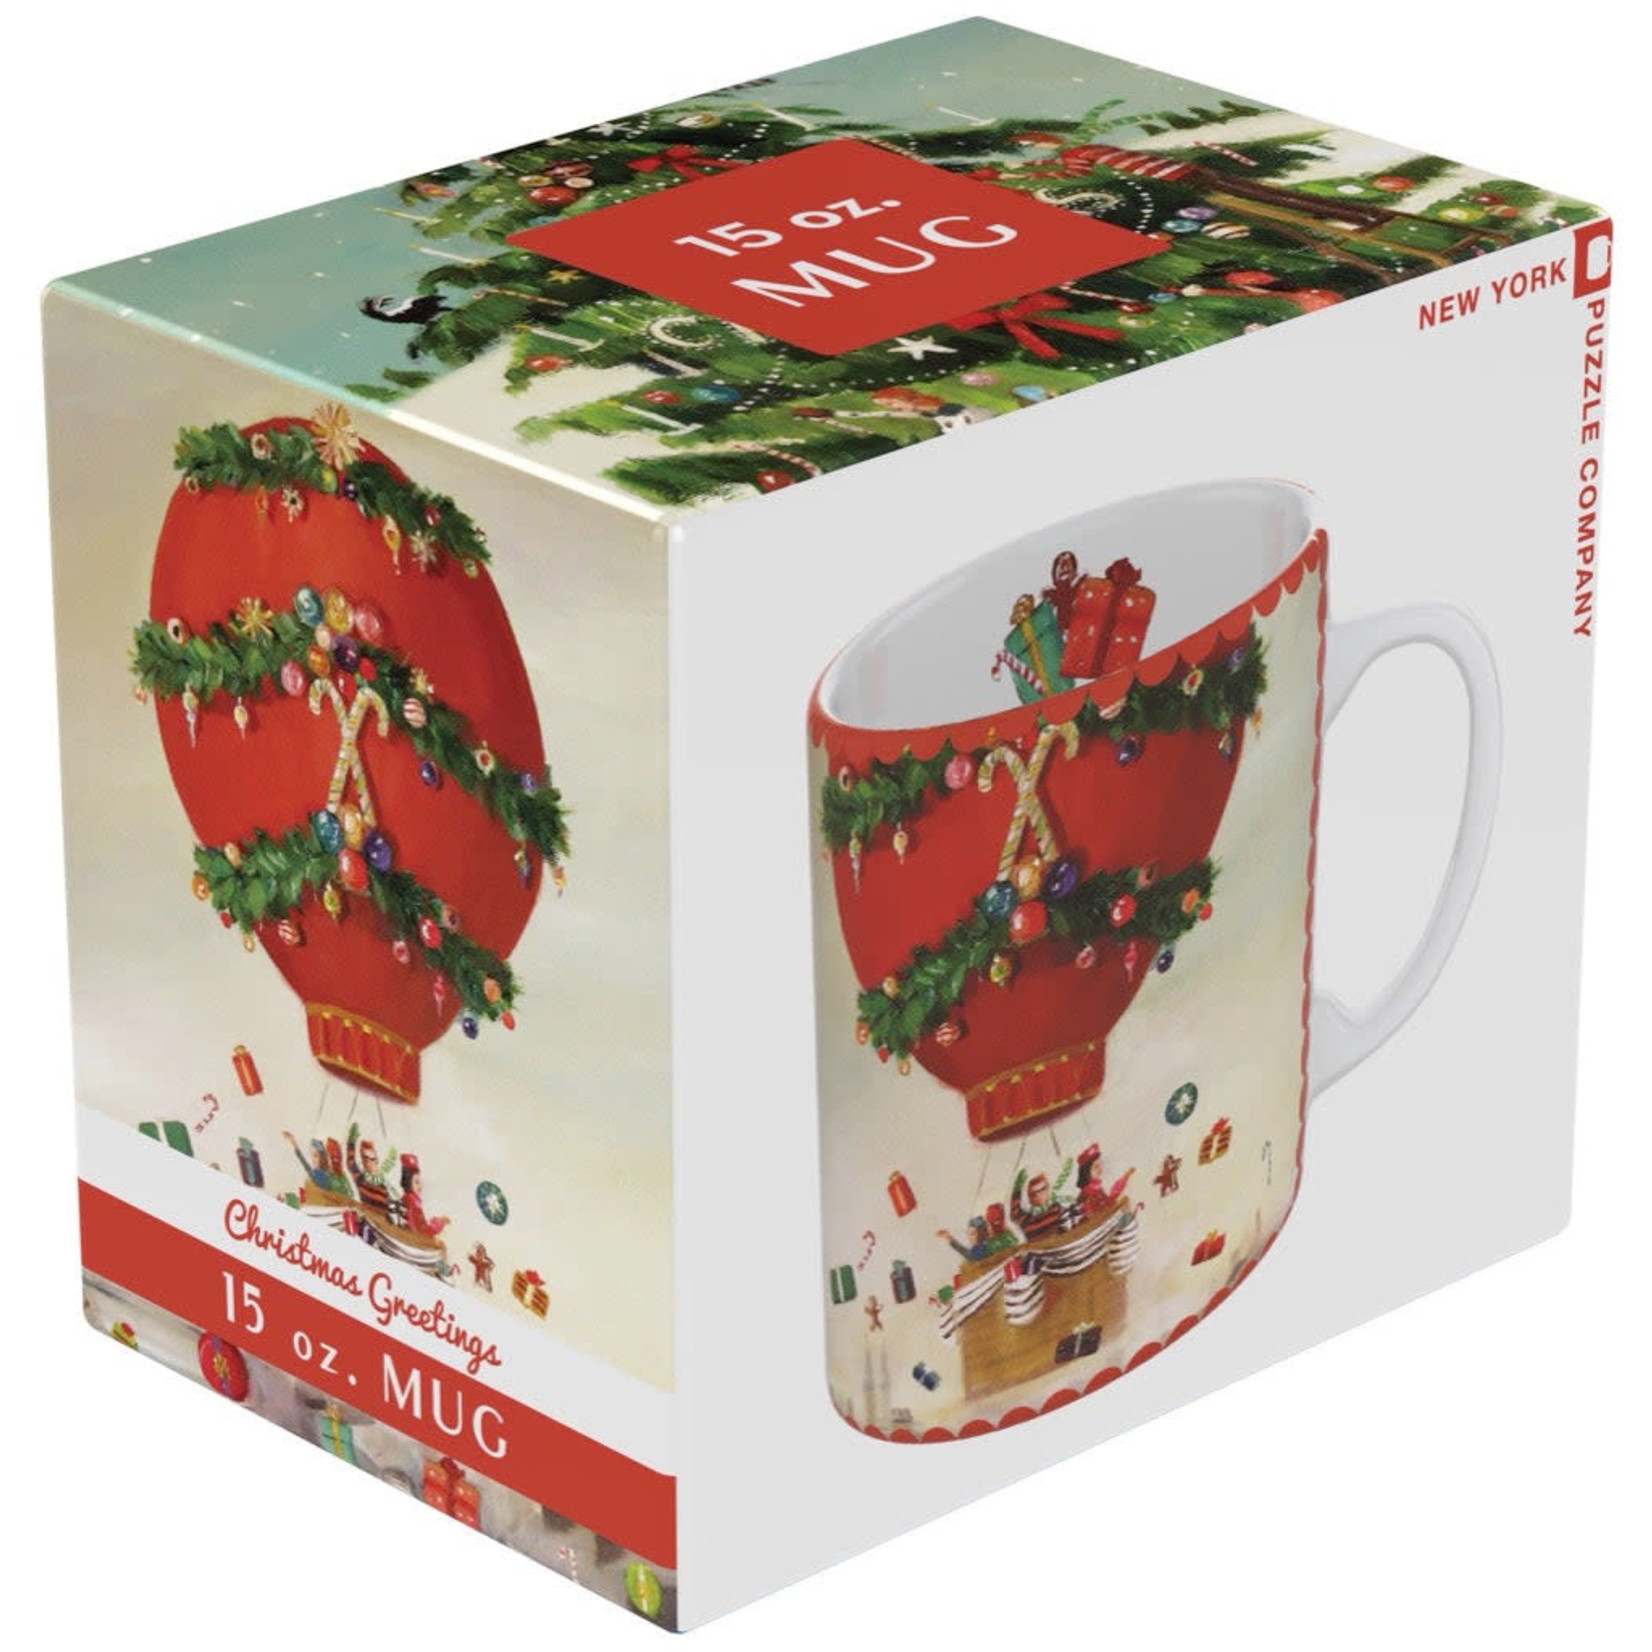 Mug - Christmas Greetings 15 oz